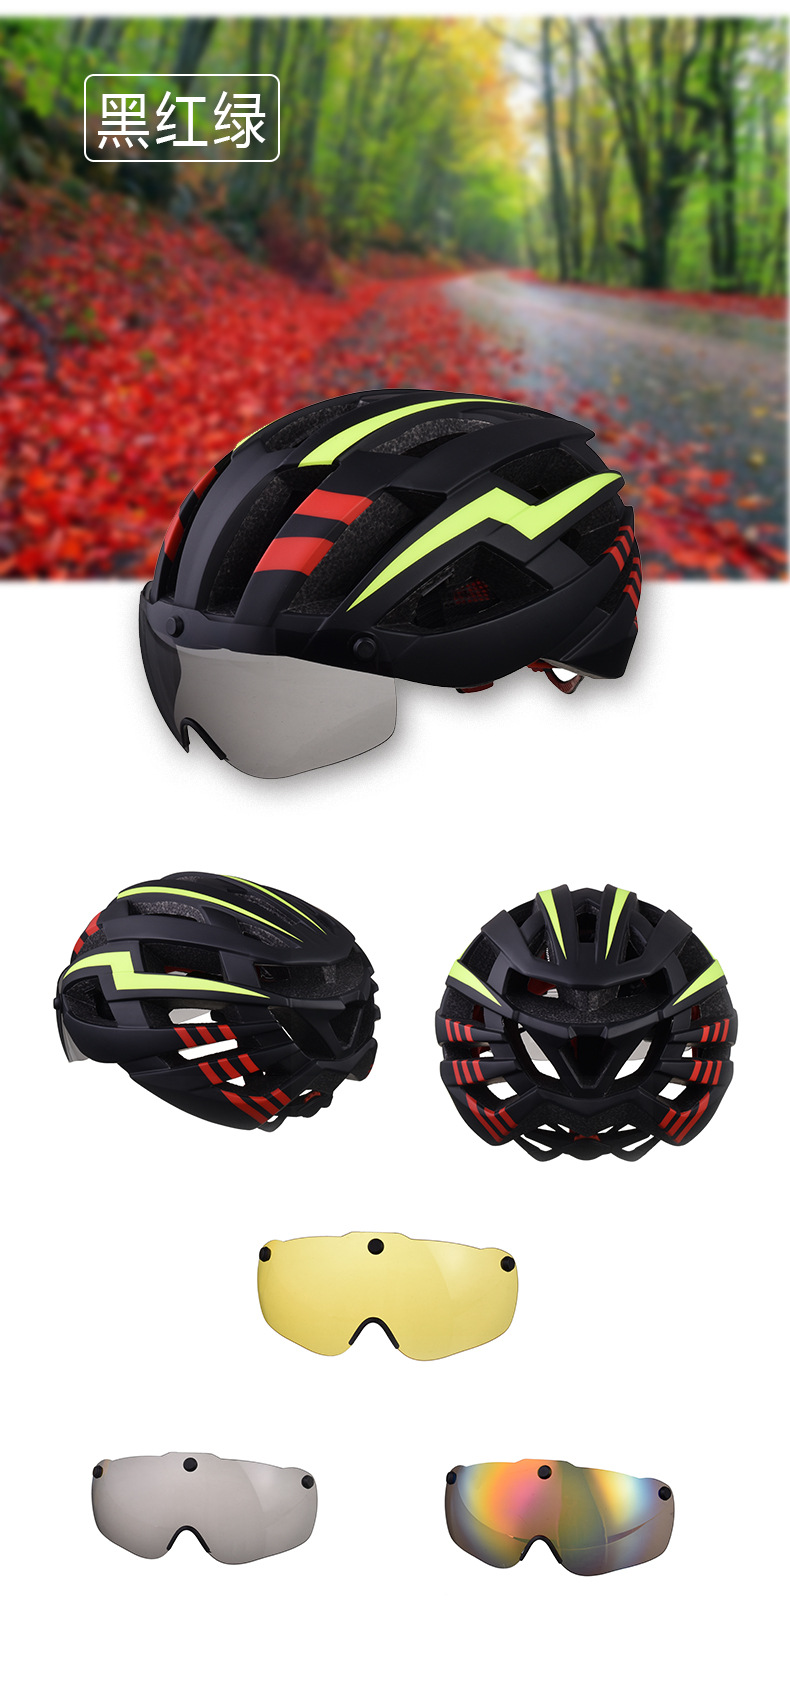 防风带吸磁风镜骑行头盔一体成型安全头盔公路山地车头盔轮滑头盔示例图13